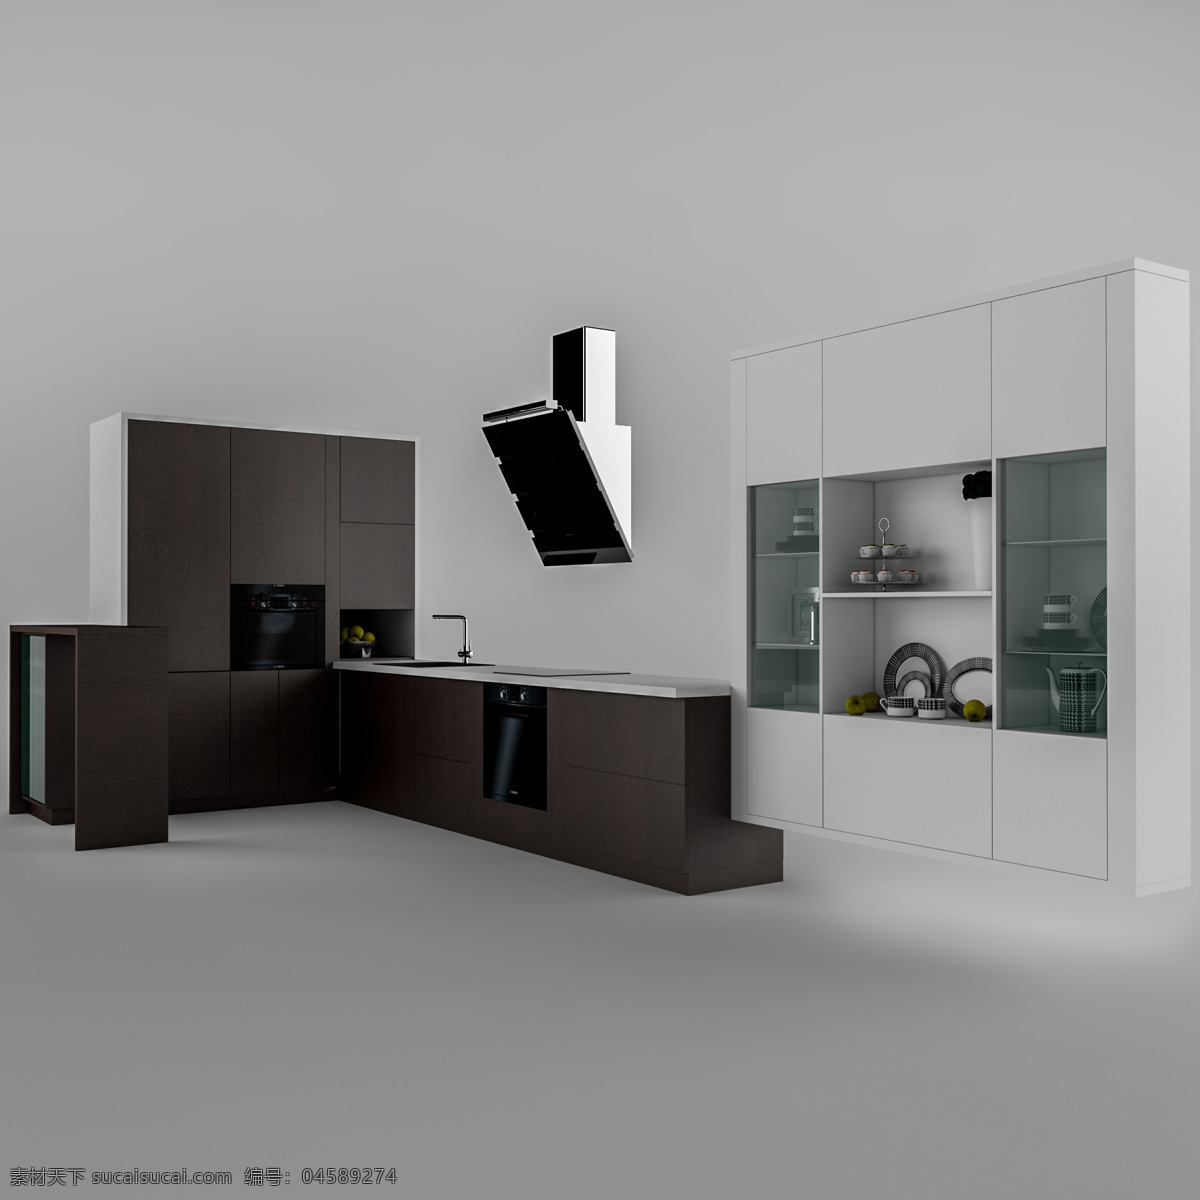 橱柜 油烟机 组合 模型 3d模型 效果图 厨具 3d渲染 模型素材